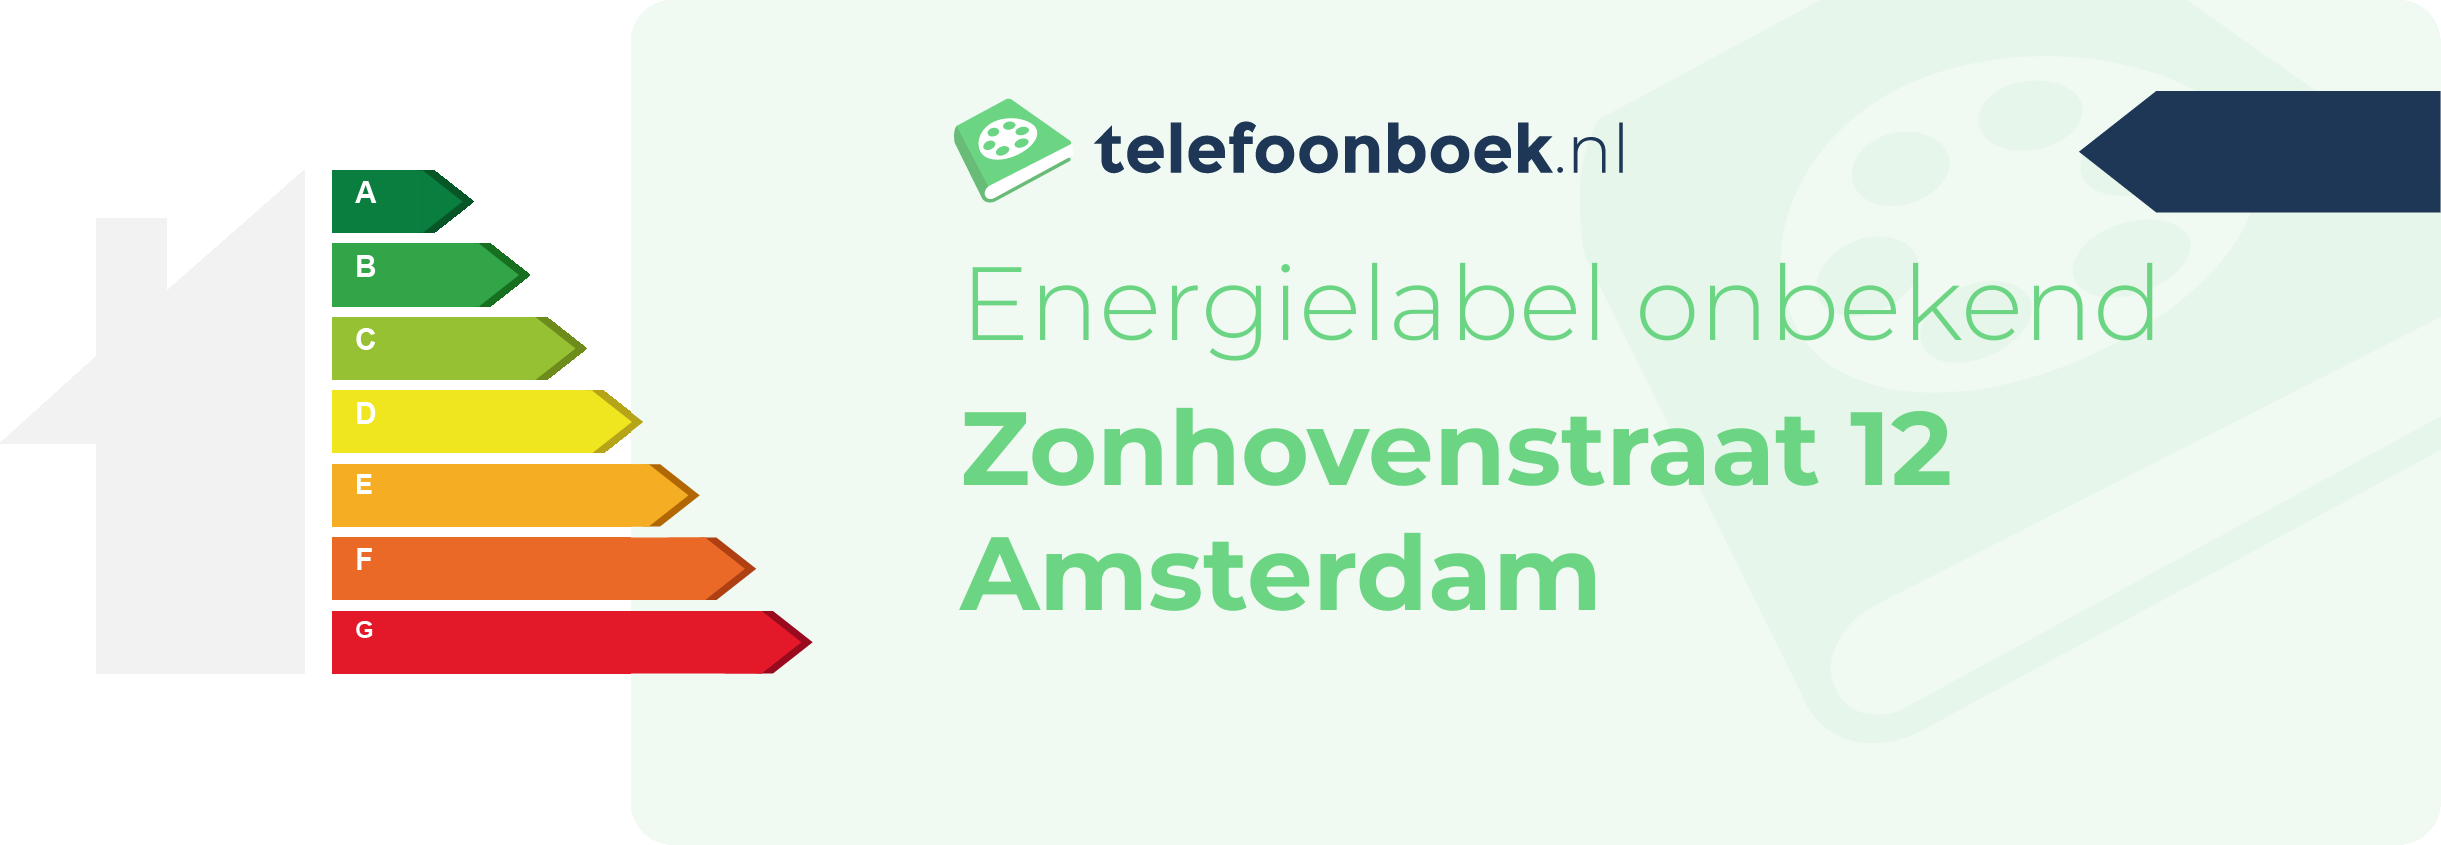 Energielabel Zonhovenstraat 12 Amsterdam